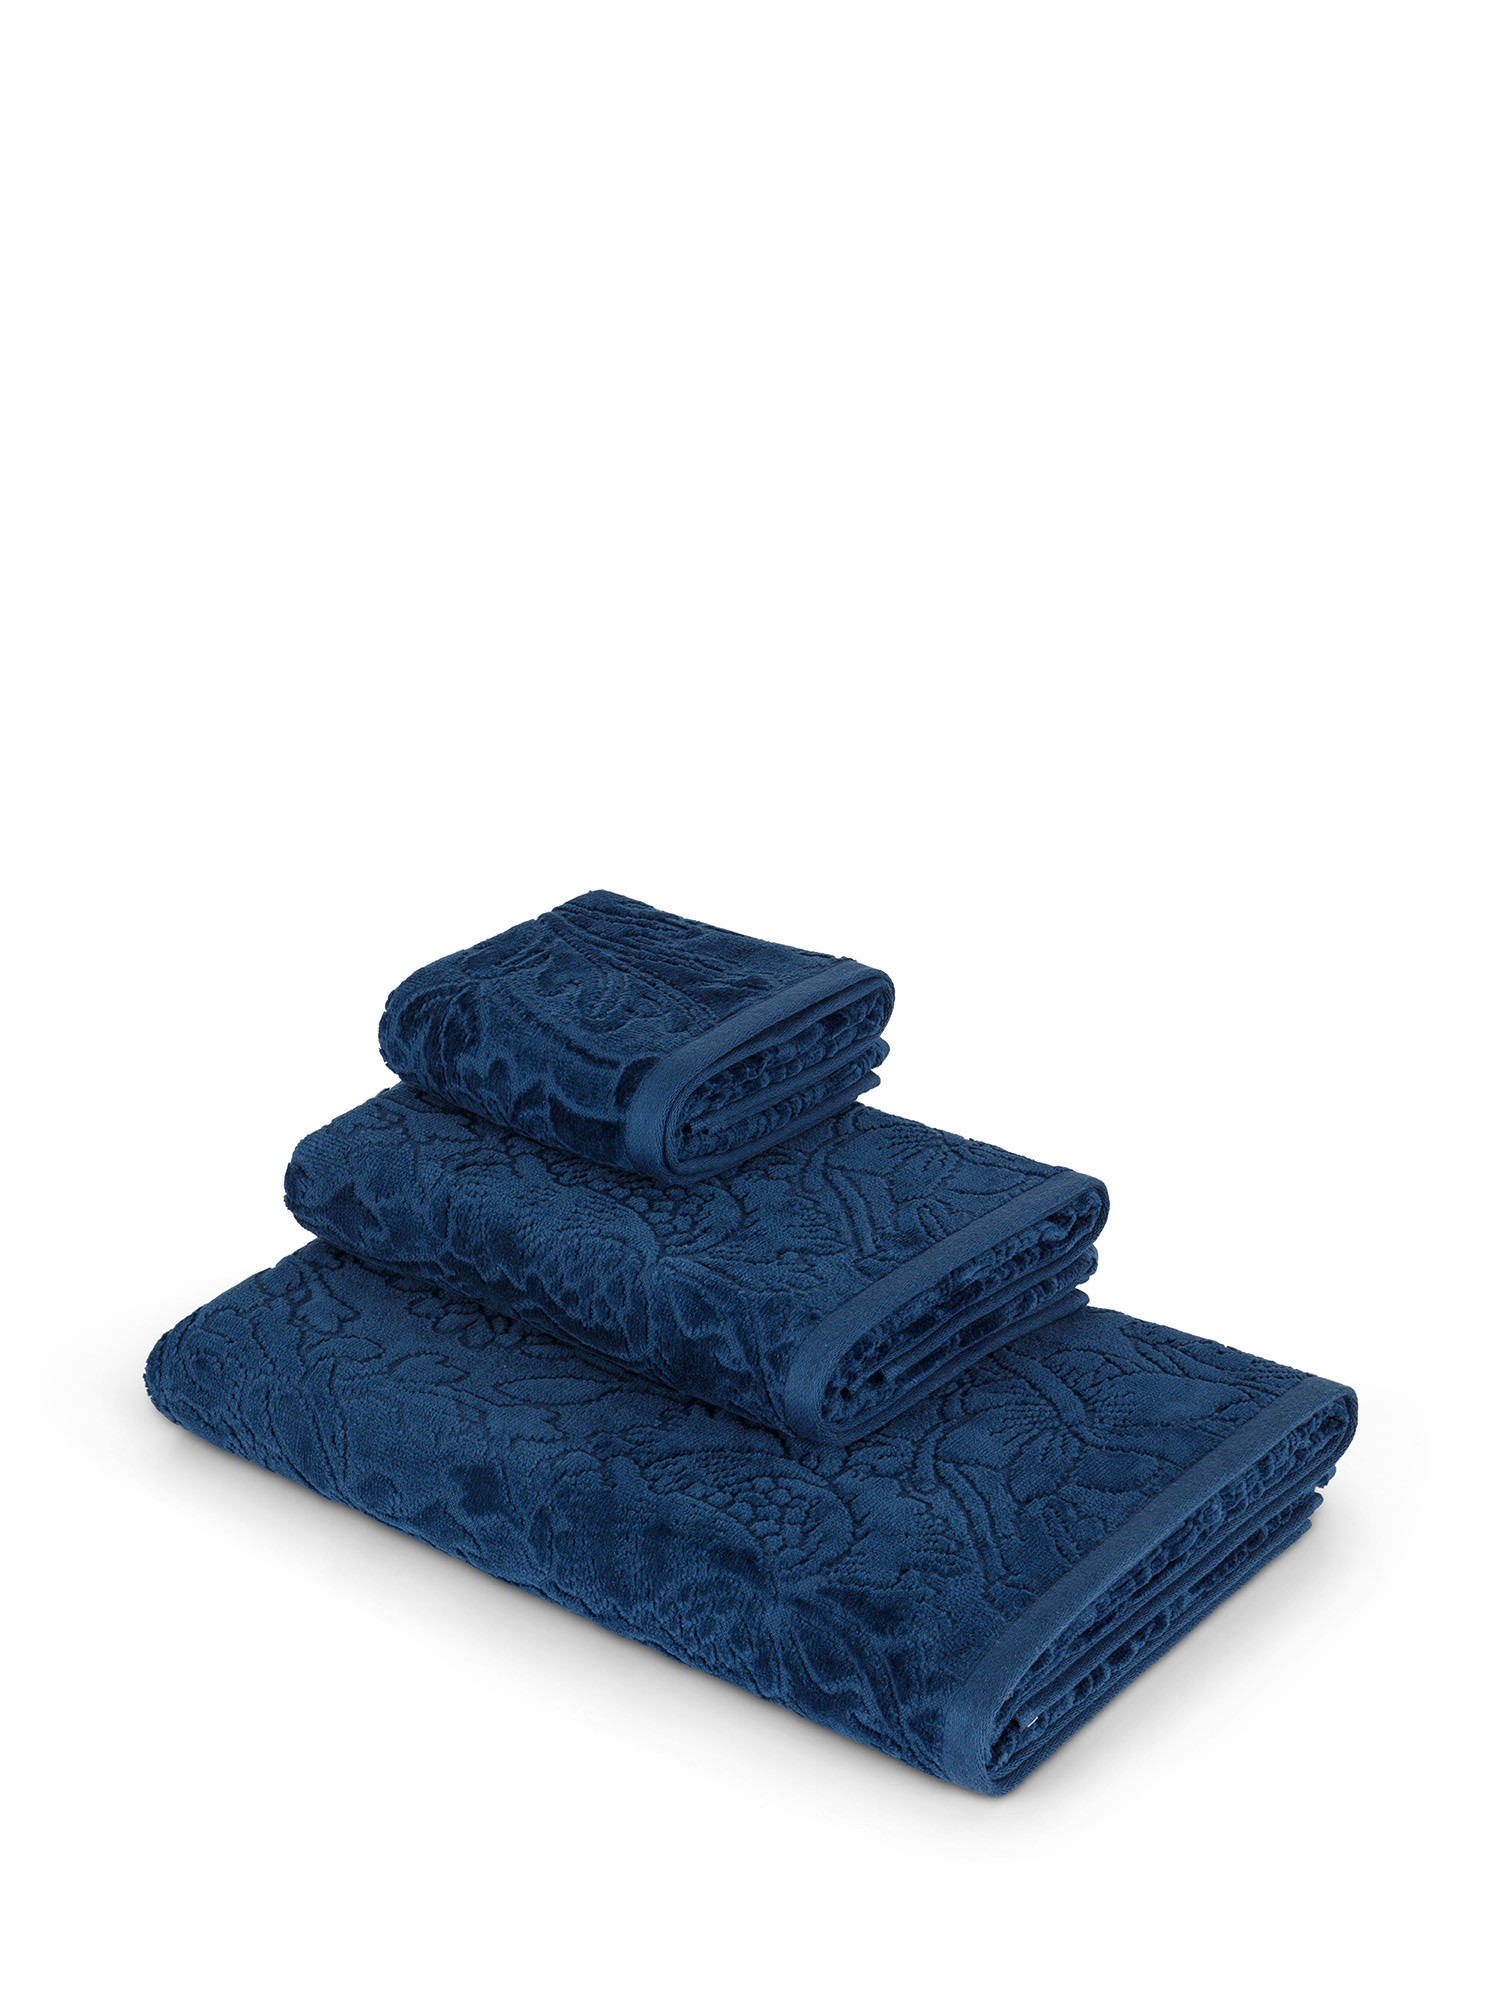 Asciugamano in velour di puro cotone tinta unita con lavorazione fiori, Blu, large image number 0